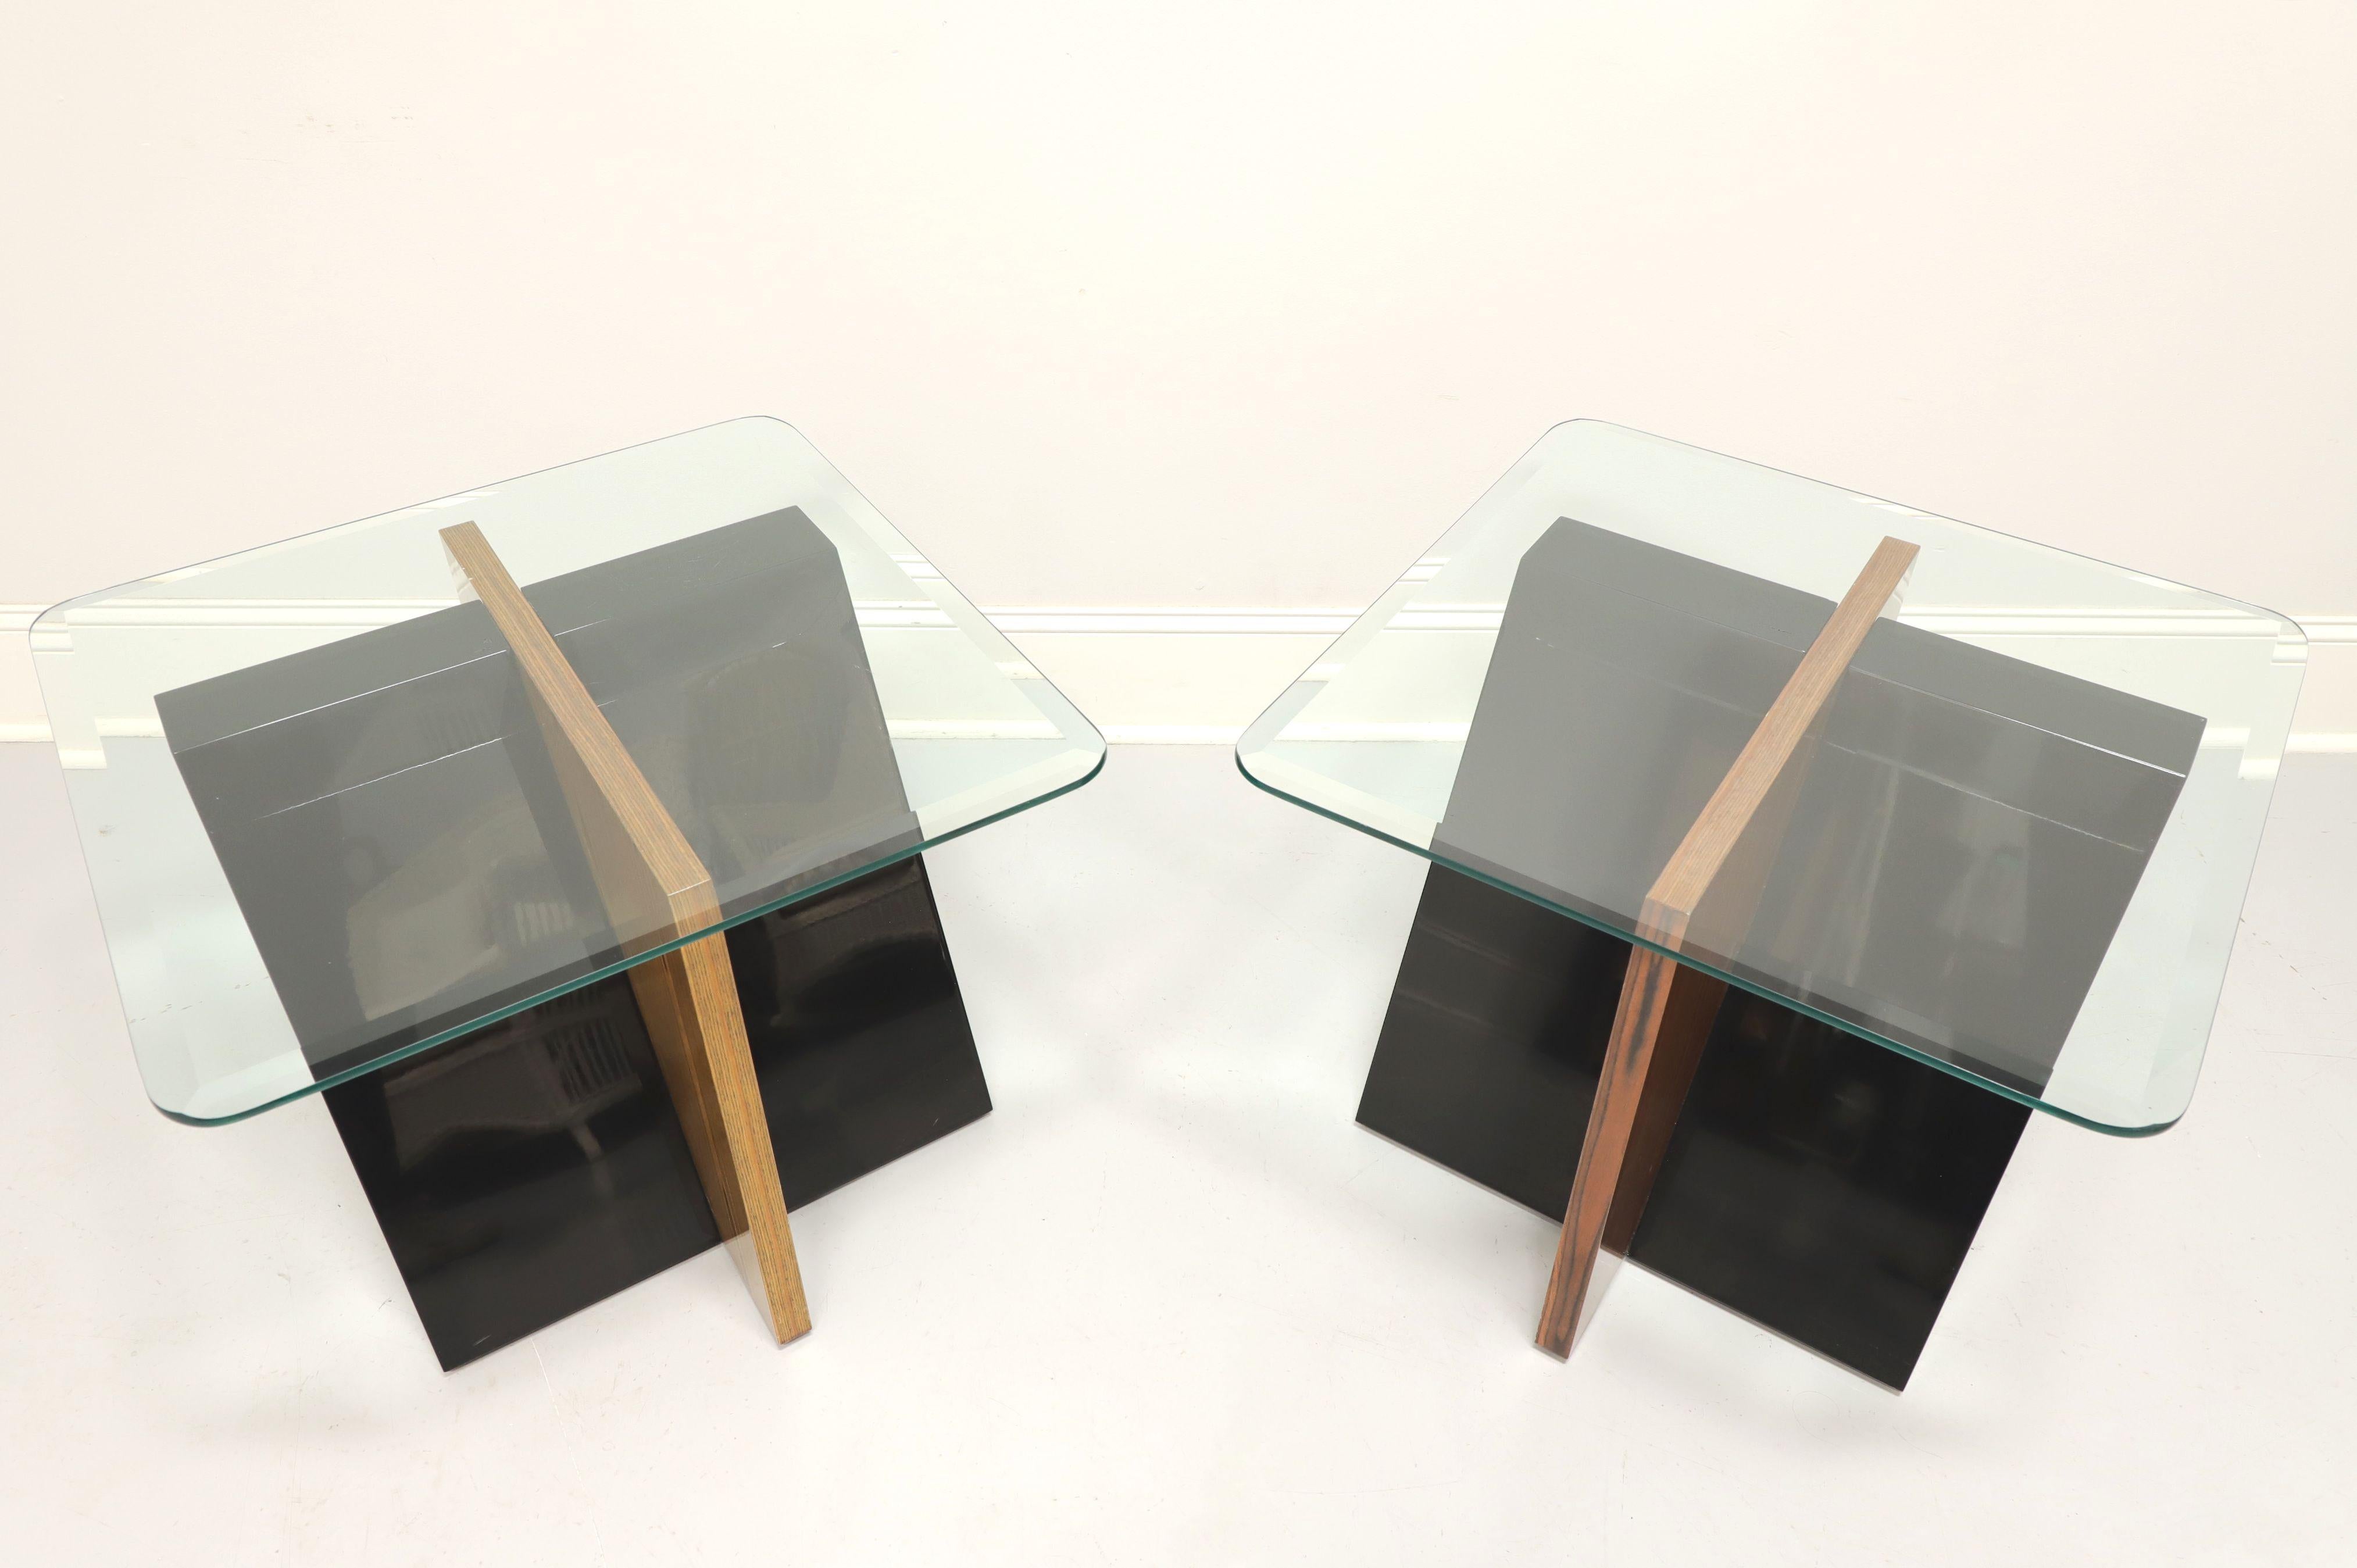 Une paire de tables d'extrémité contemporaines à plateau en verre par Gordon's Furniture, de Johnson City, Tennessee, USA. Base en bois dur et en acrylique en forme de 